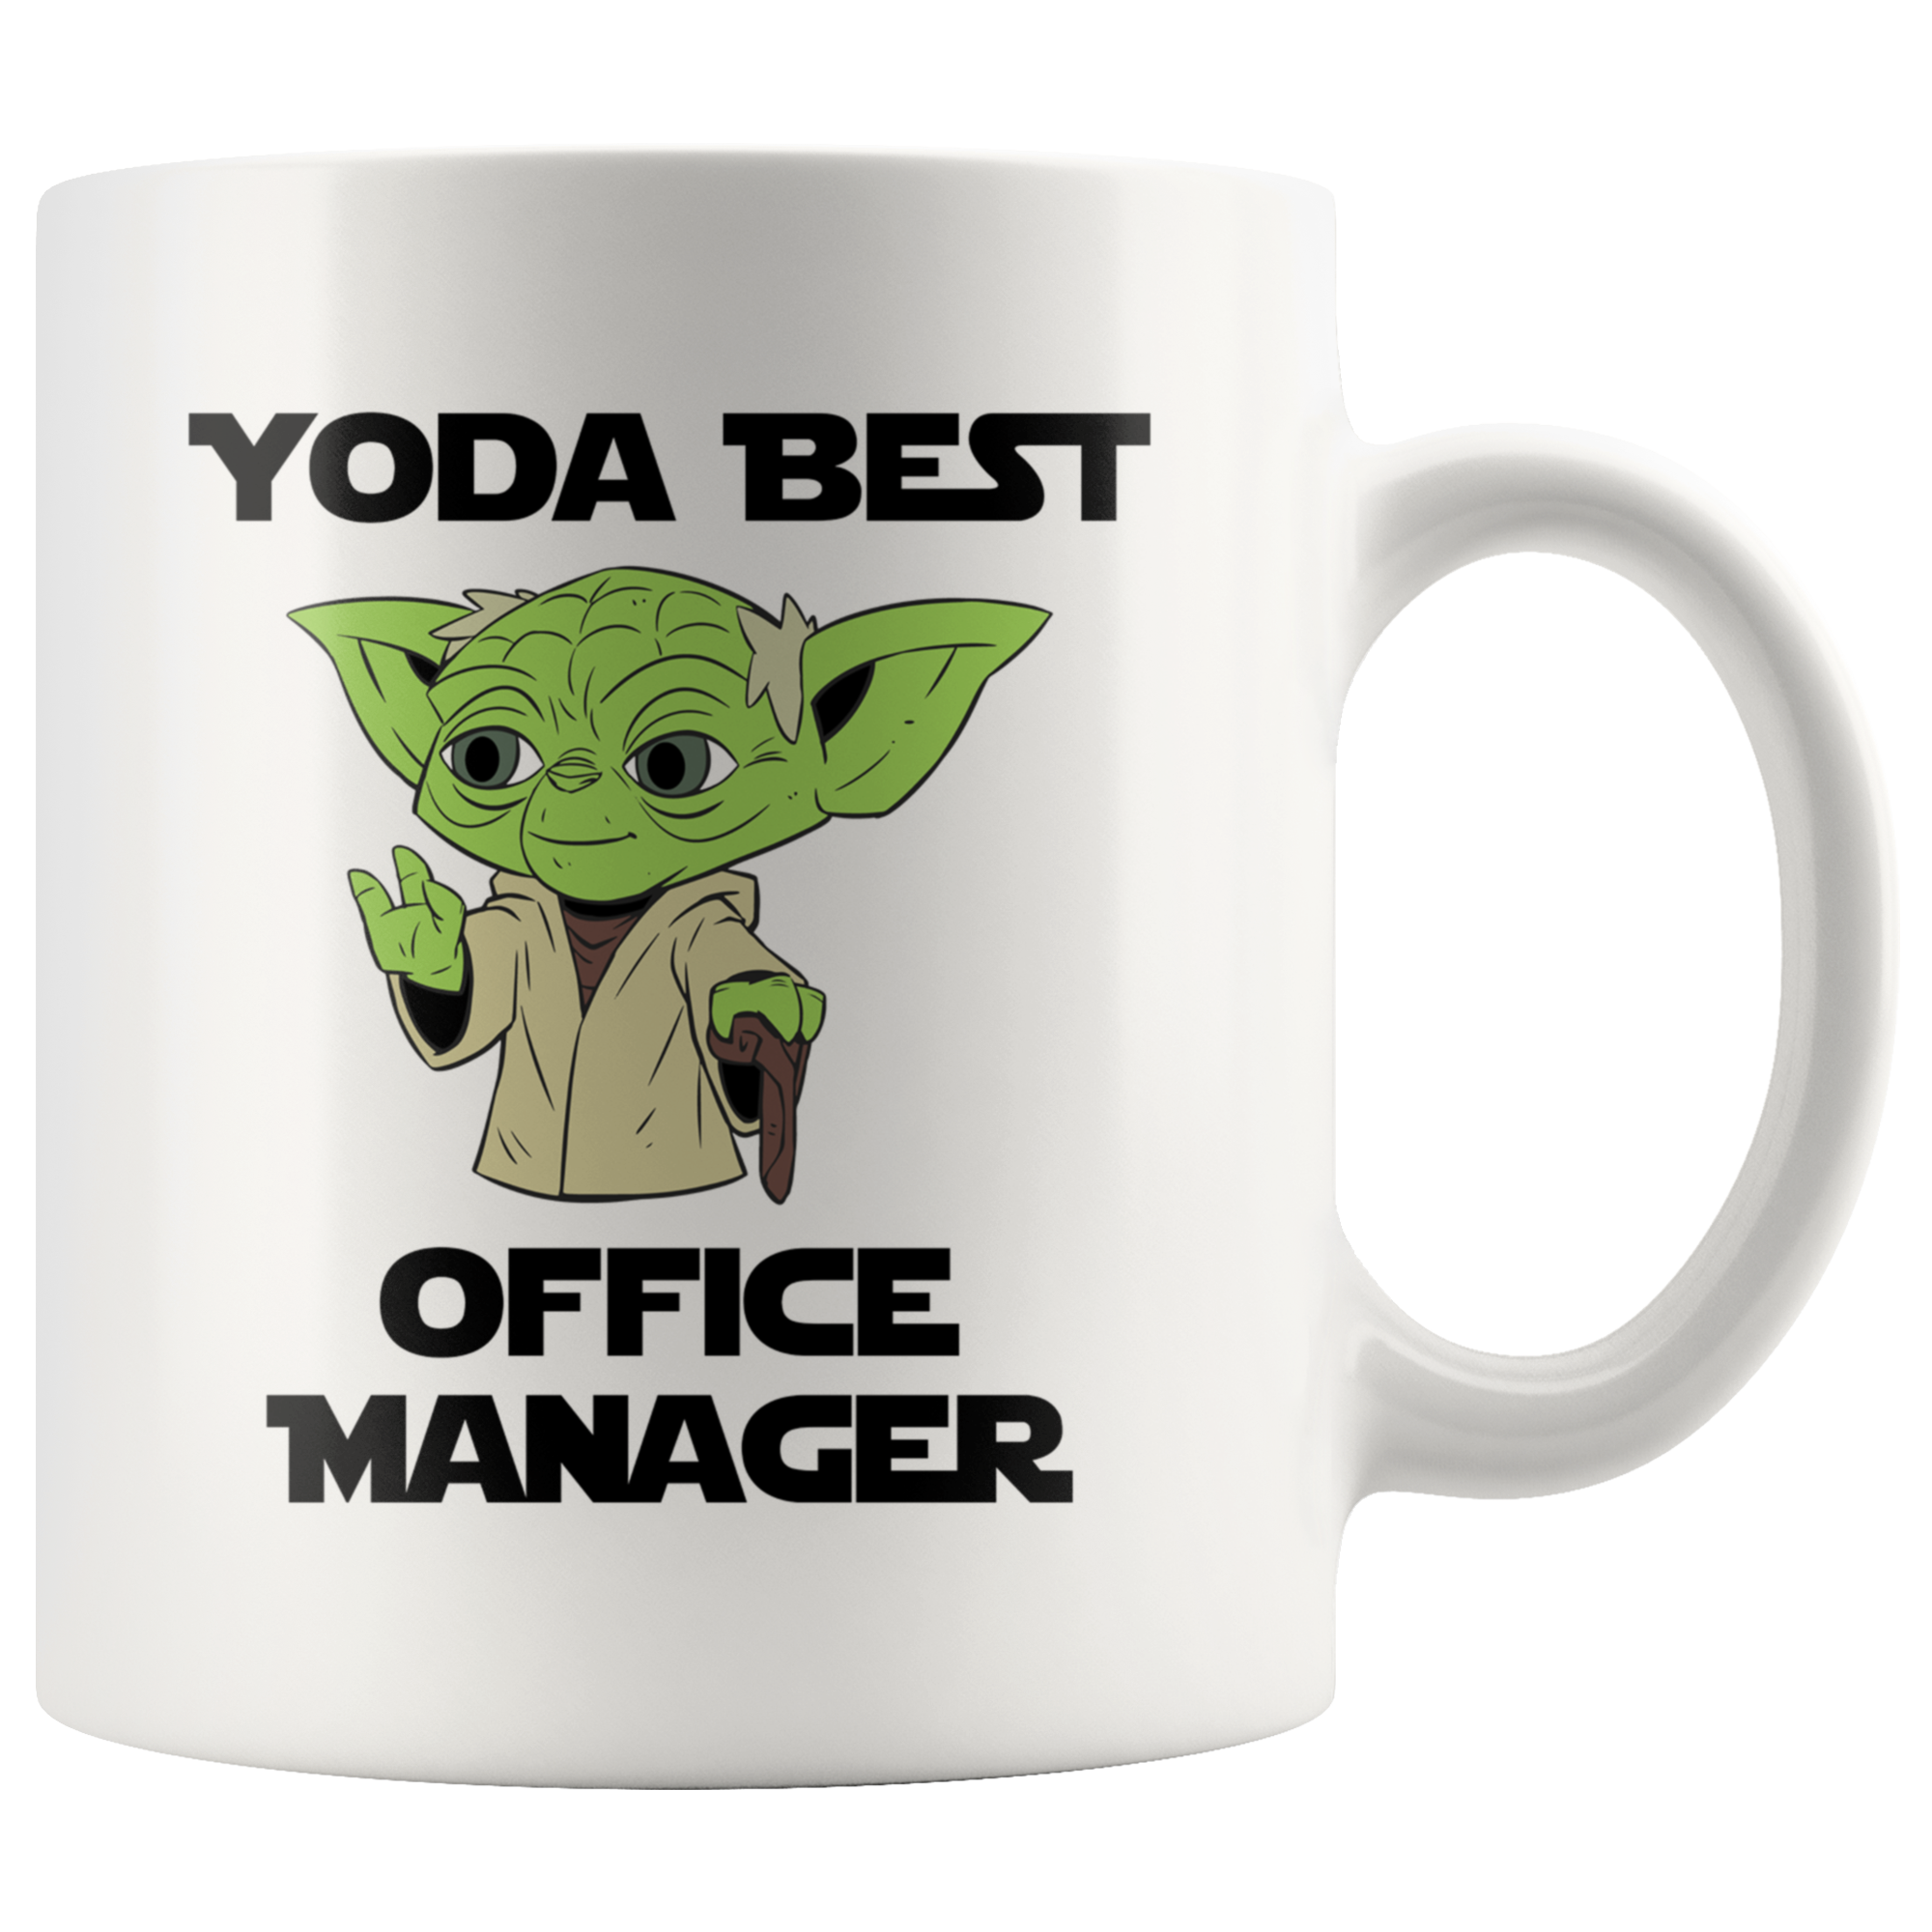 Yoda Best Office Manager 11oz Coffee Mug - TL